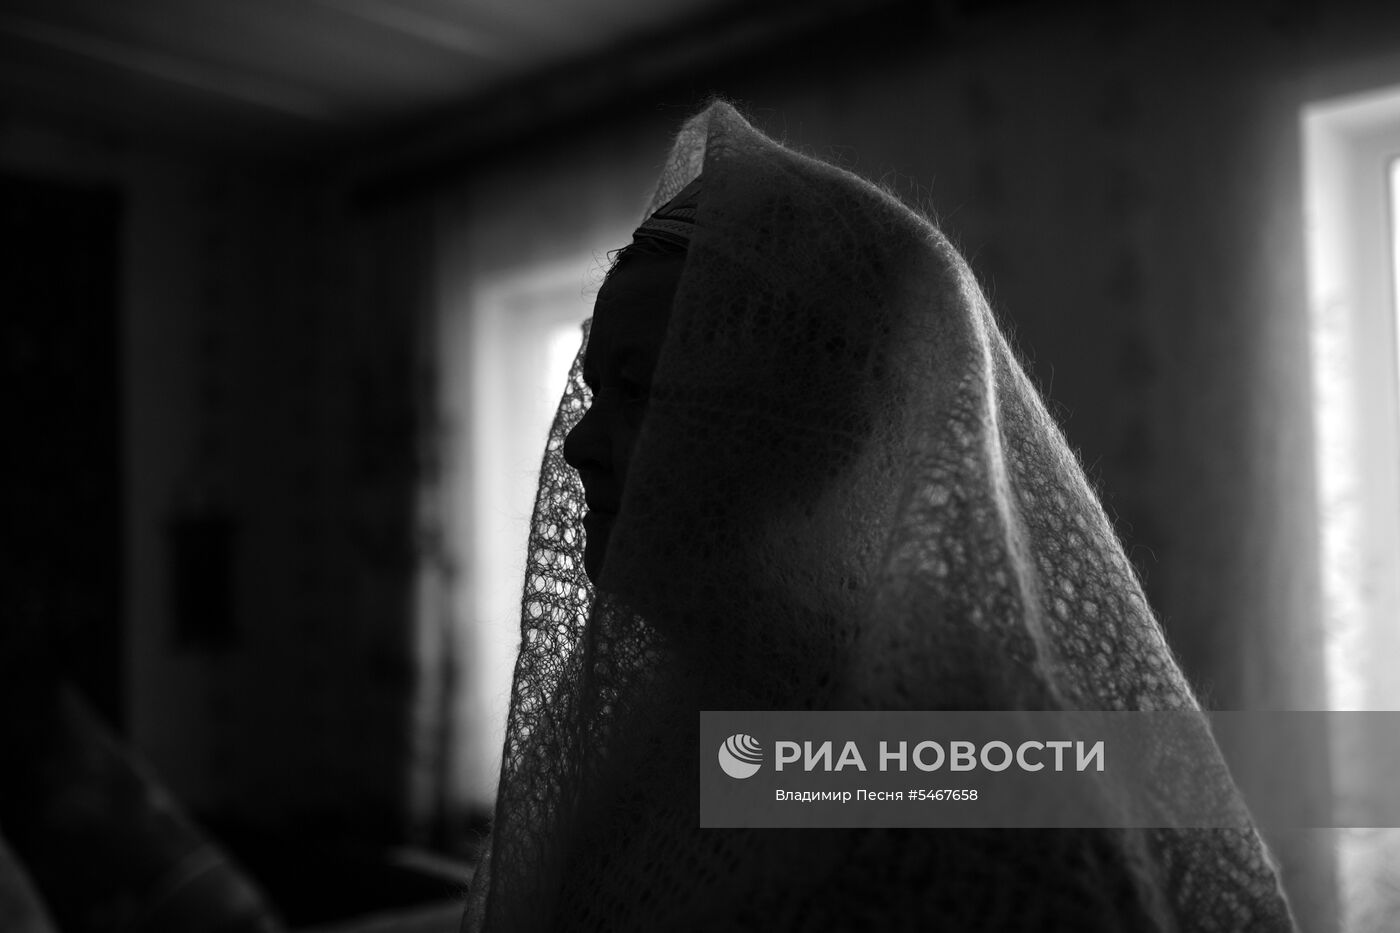 Фотокорреспондент МИА "Россия сегодня" В. Песня получил особую отметку жюри на фотоконкурсе NPPA